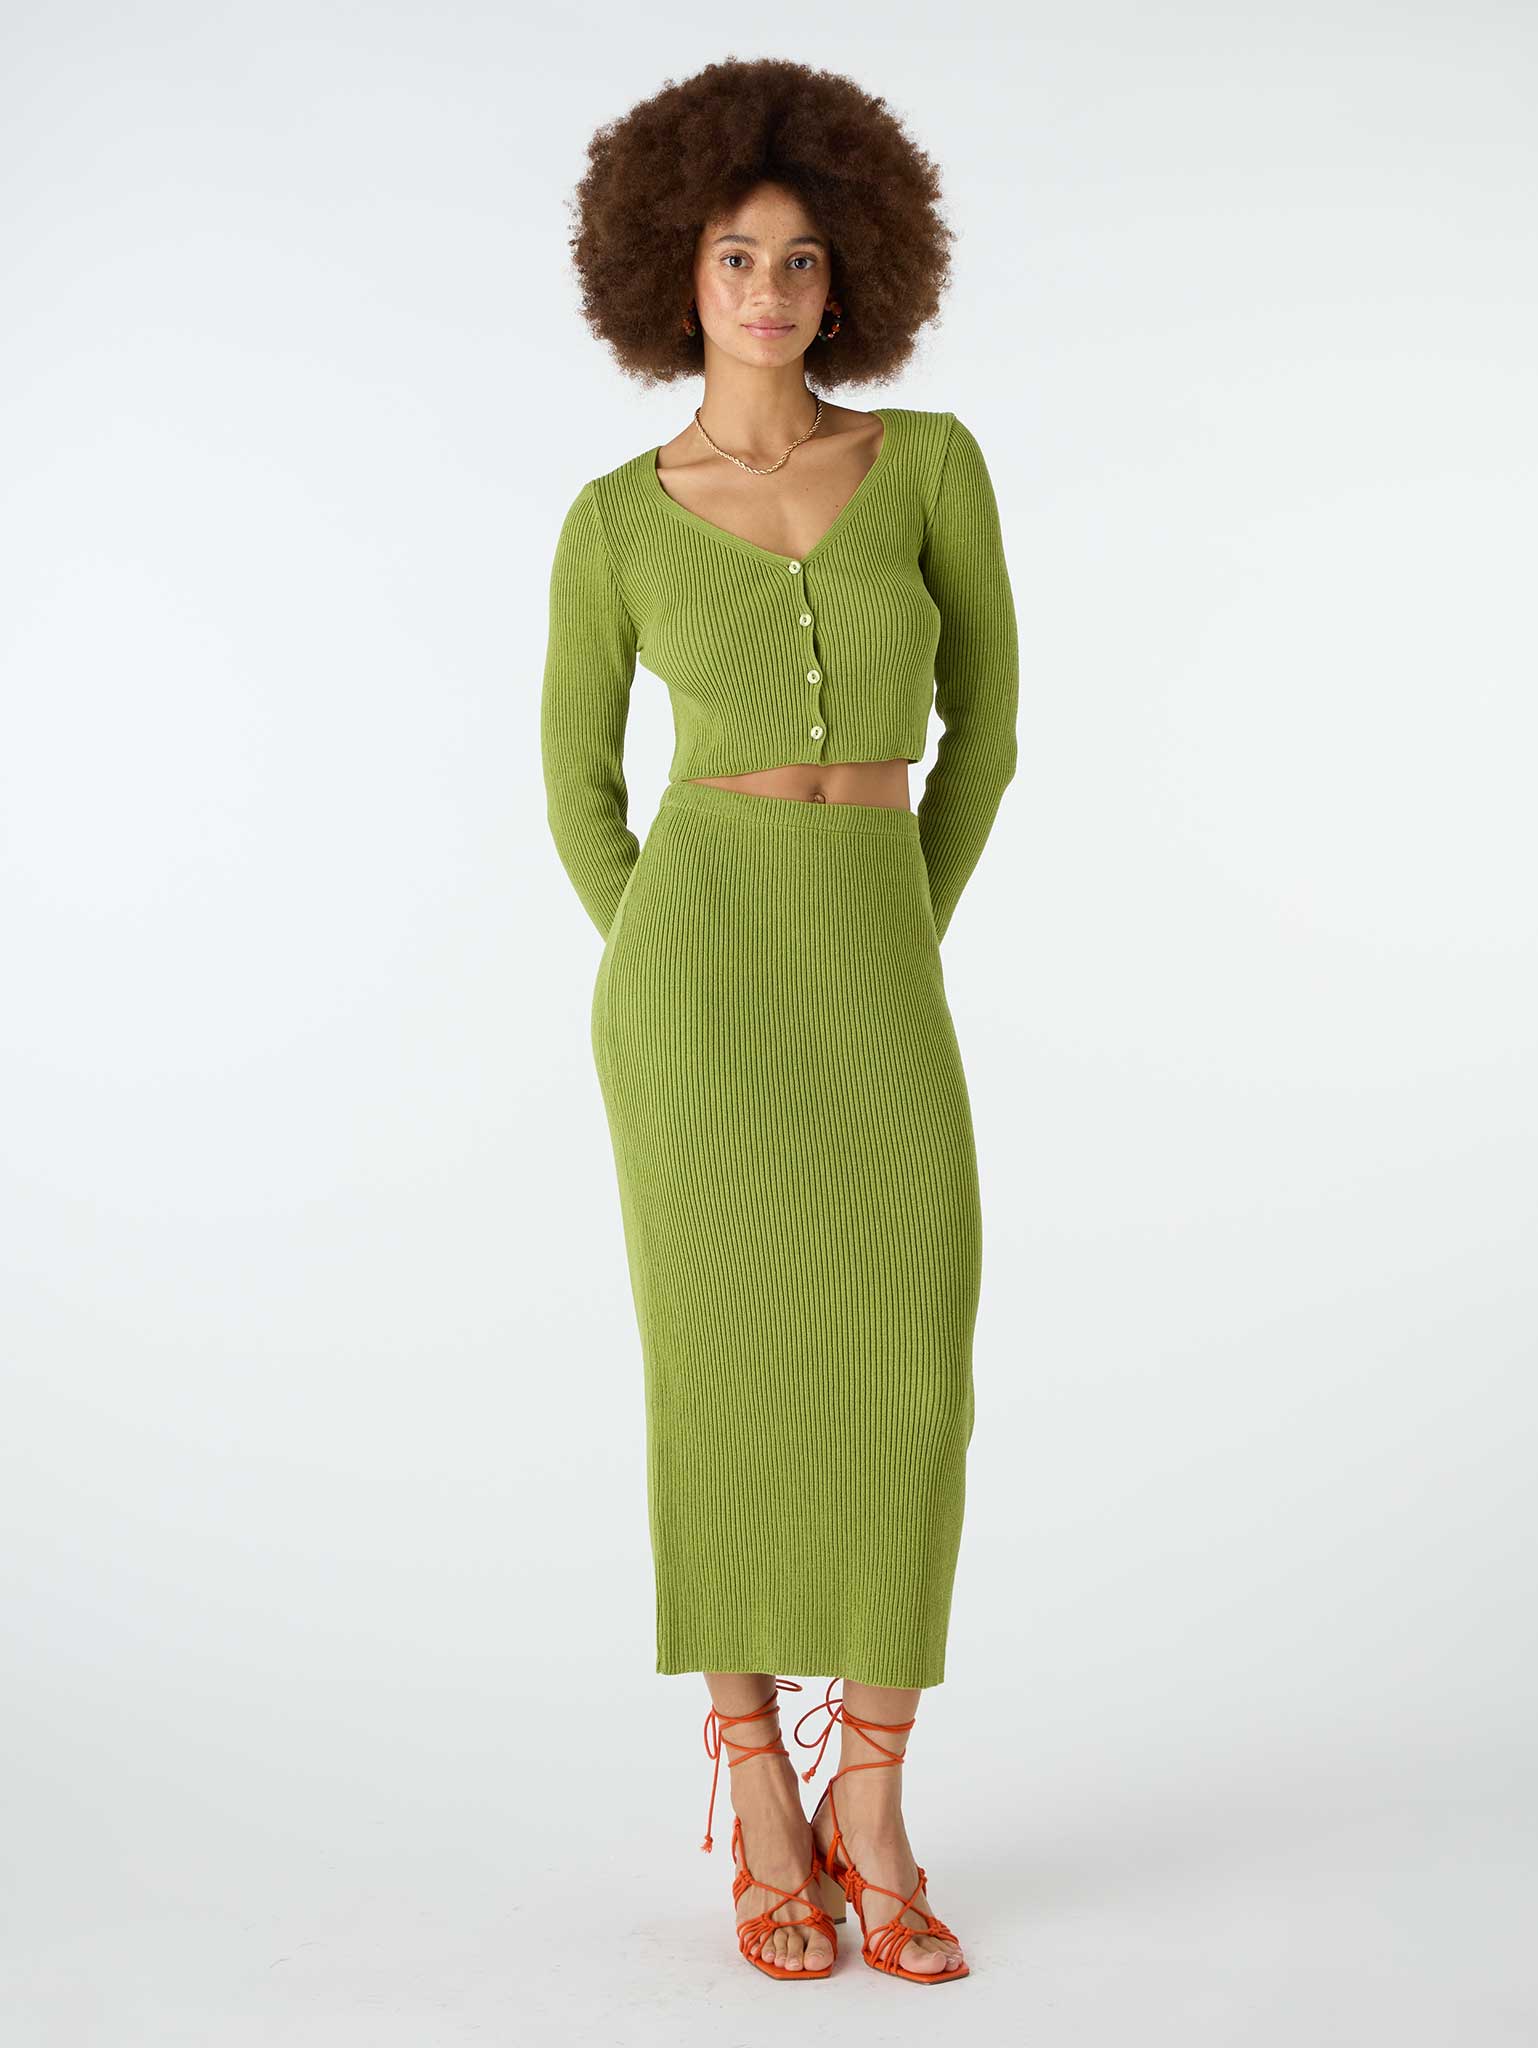 Franklin Midi Skirt in Green